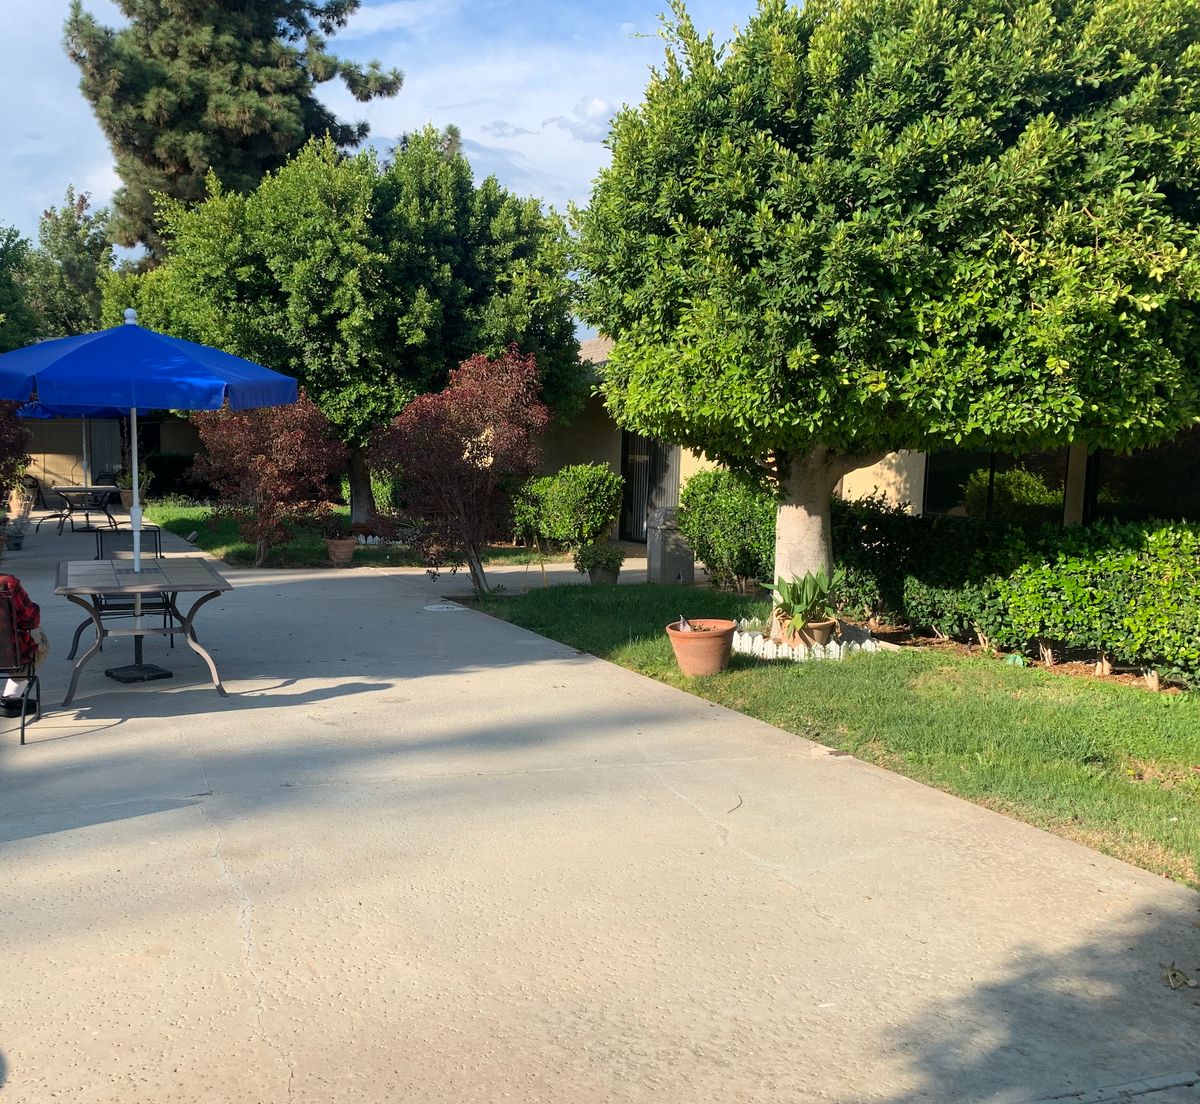 Senior residents enjoying summer at Santa Anita Assisted Living community with lush gardens and pets.